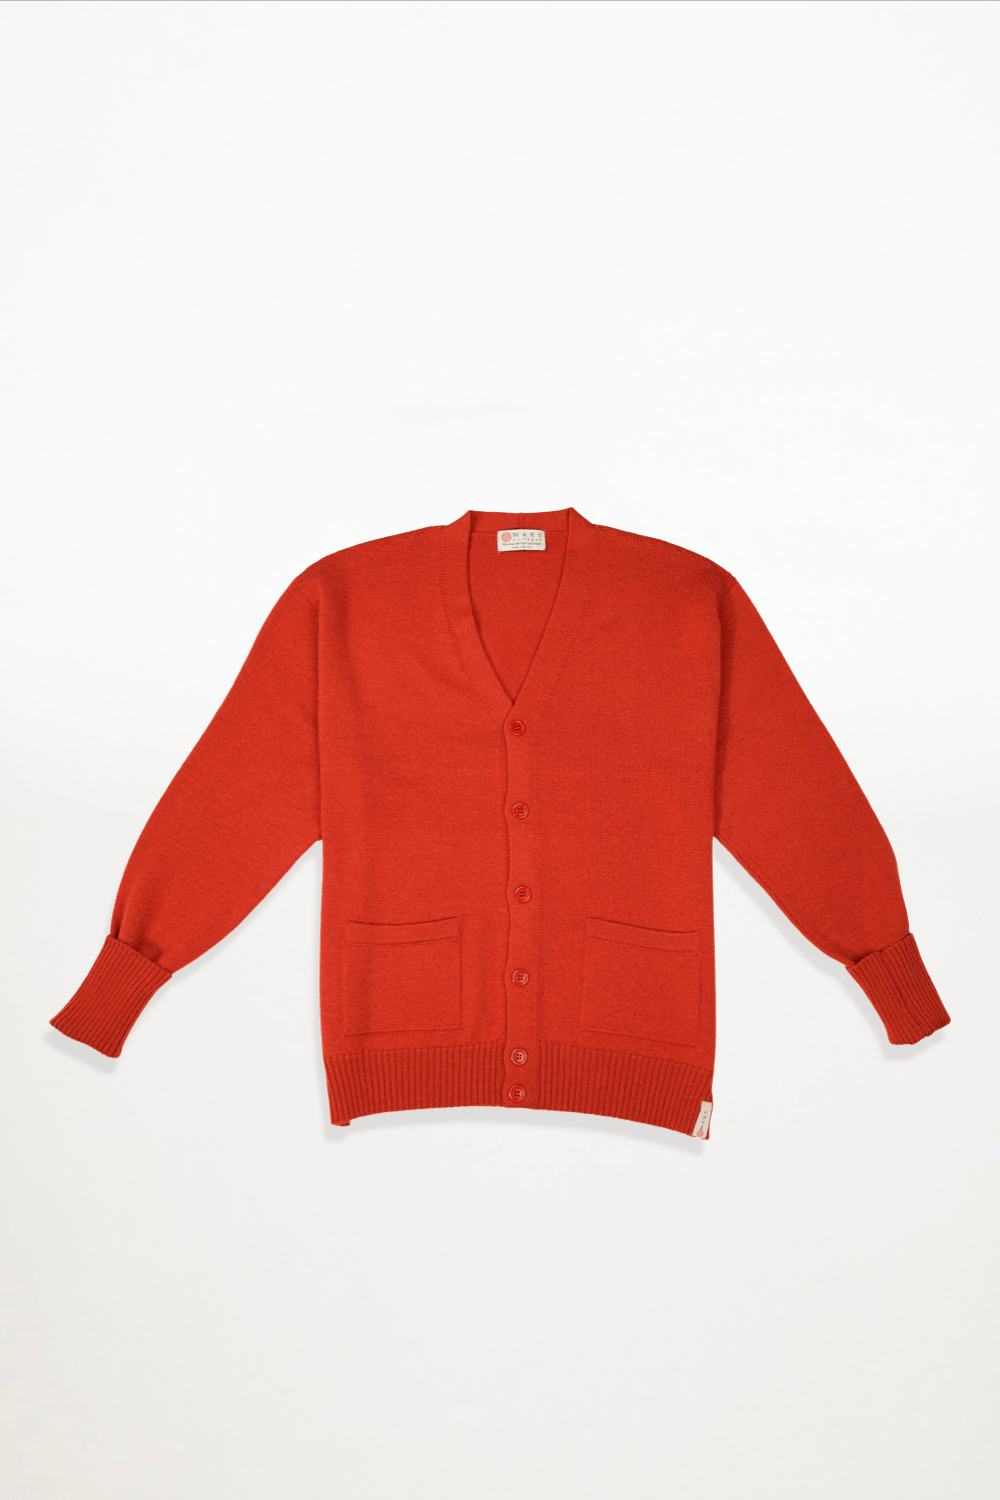 Mars Knitwear - Merino Wool Signature Cardigan - Rust - Ensemble Studios